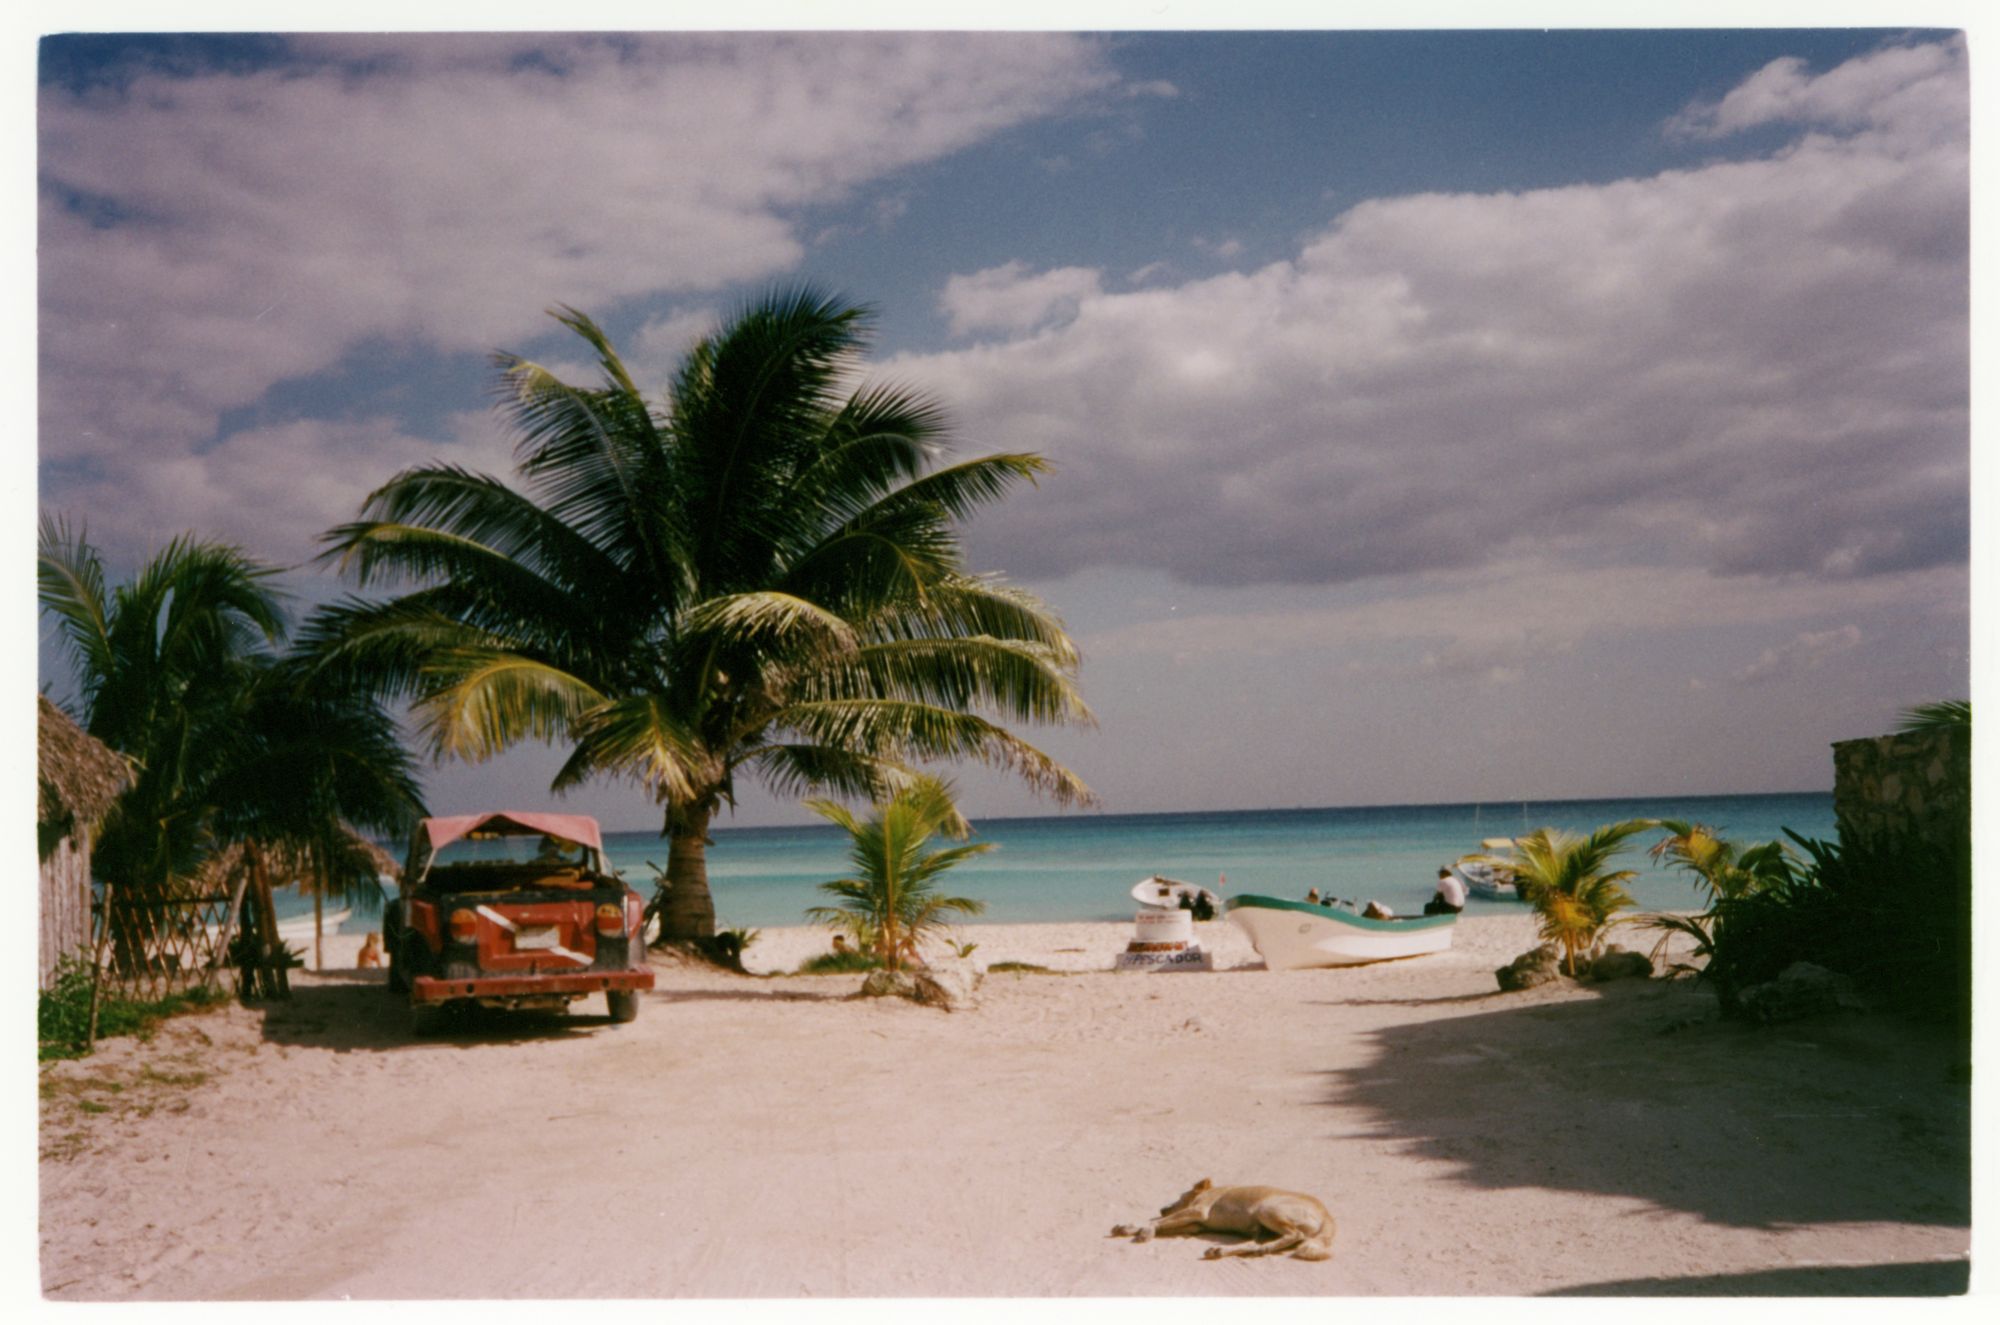 Playa del Carmen nel 1994 con furgone e Cane